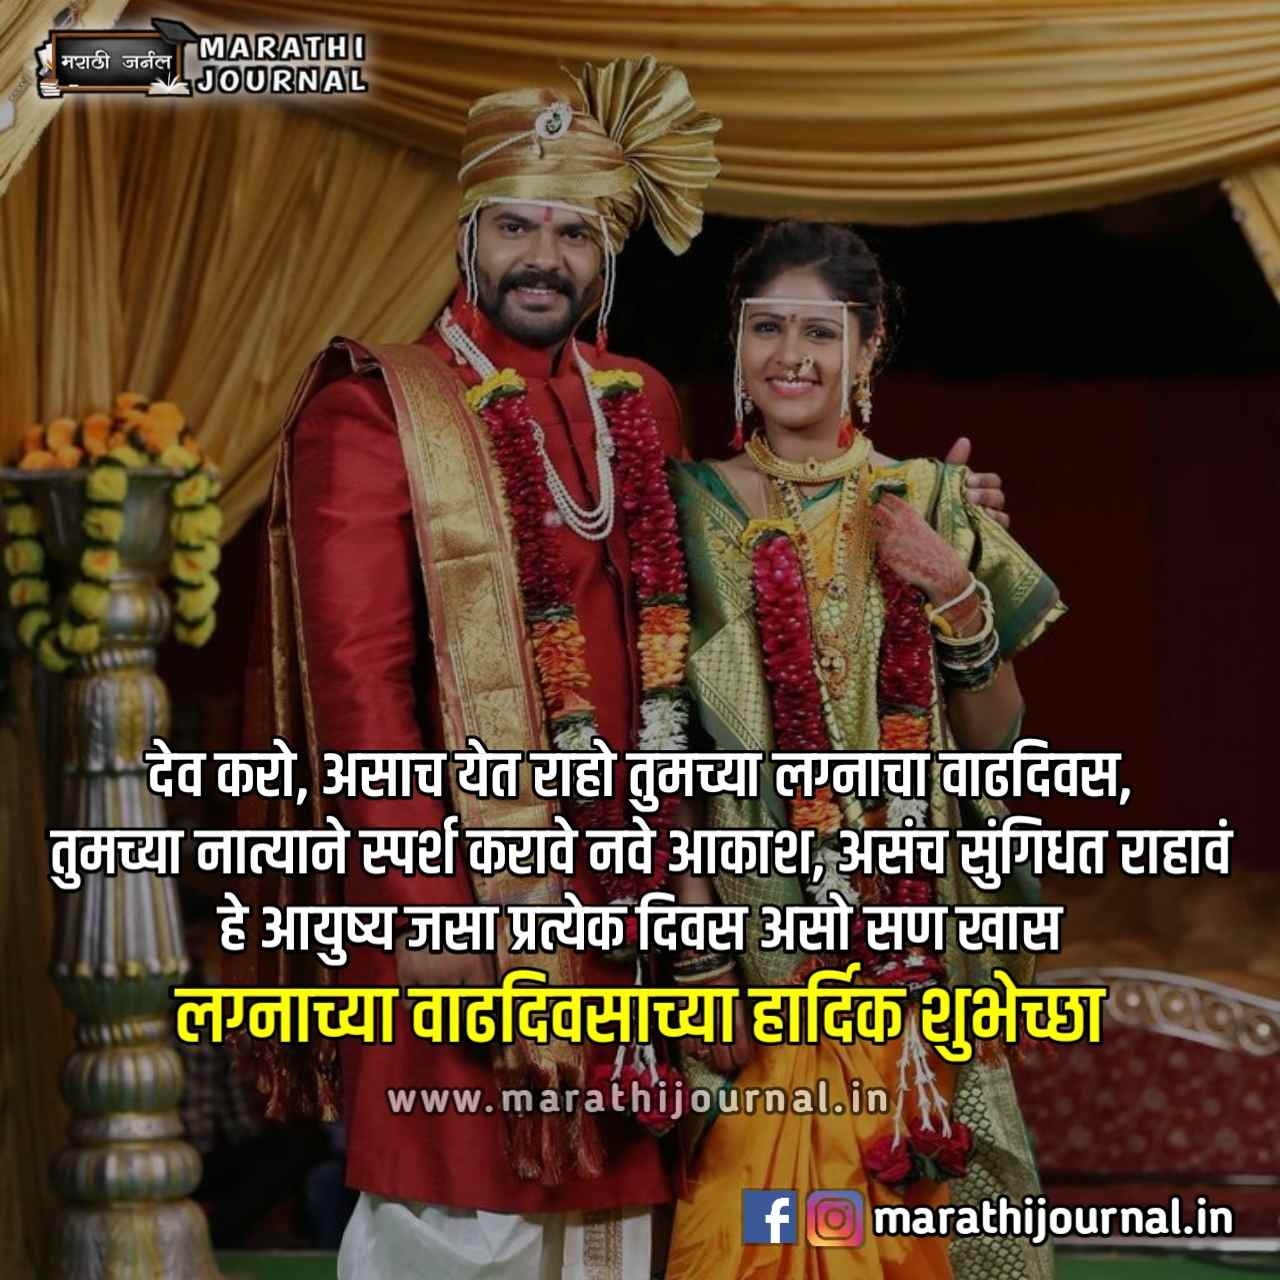 लग्नाच्या वाढदिवसाच्या हार्दिक शुभेच्छा | Happy Marriage Anniversary Wishes in Marathi